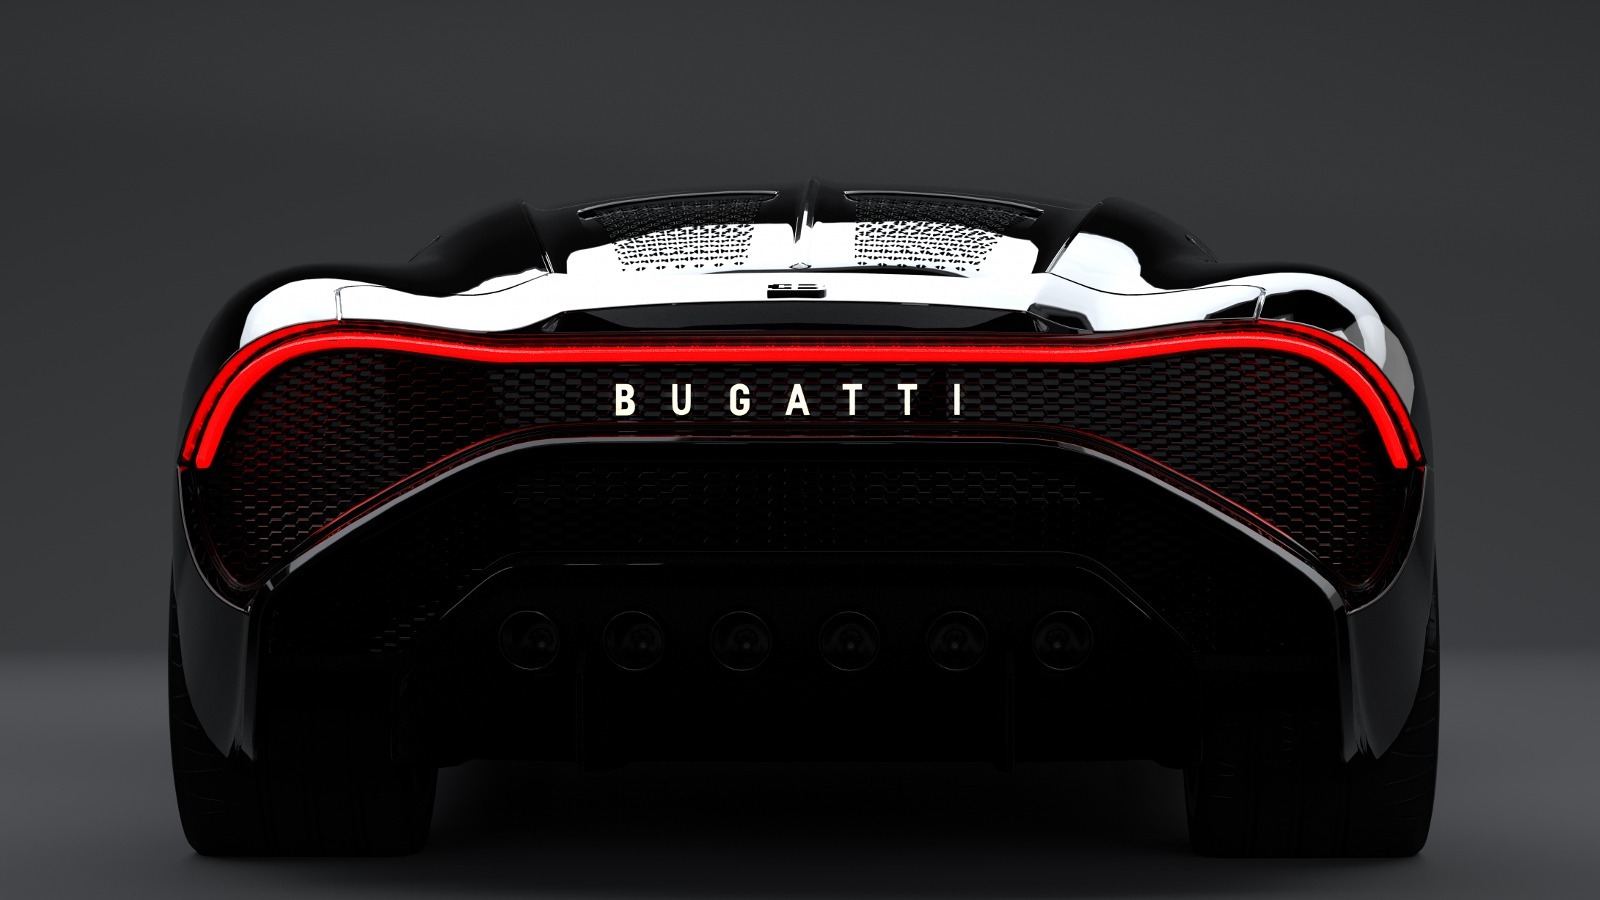 Una mirada más cercana al motor W16 cuádruple turboalimentado de 8.0 L que impulsa el Bugatti La Voiture Noire